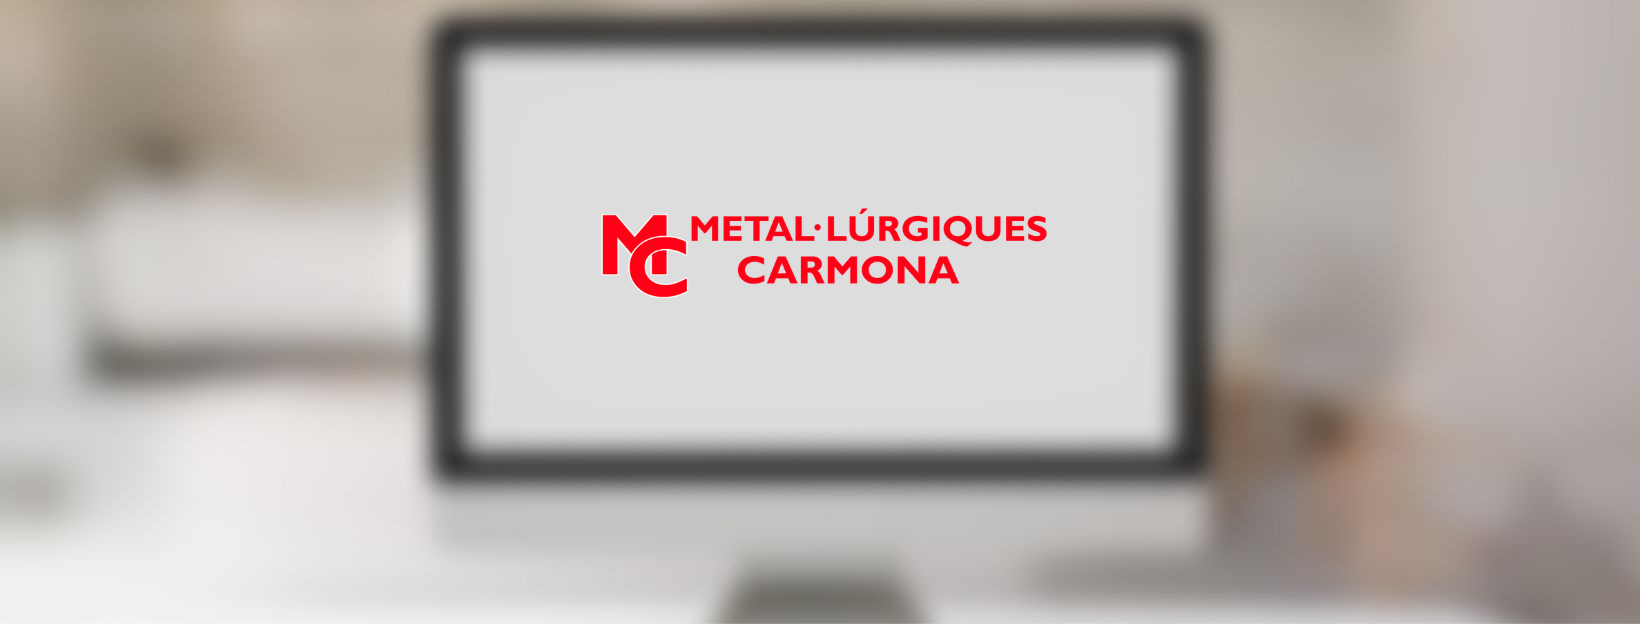 Un nou projecte SEO per Metal·lúrgiques Carmona